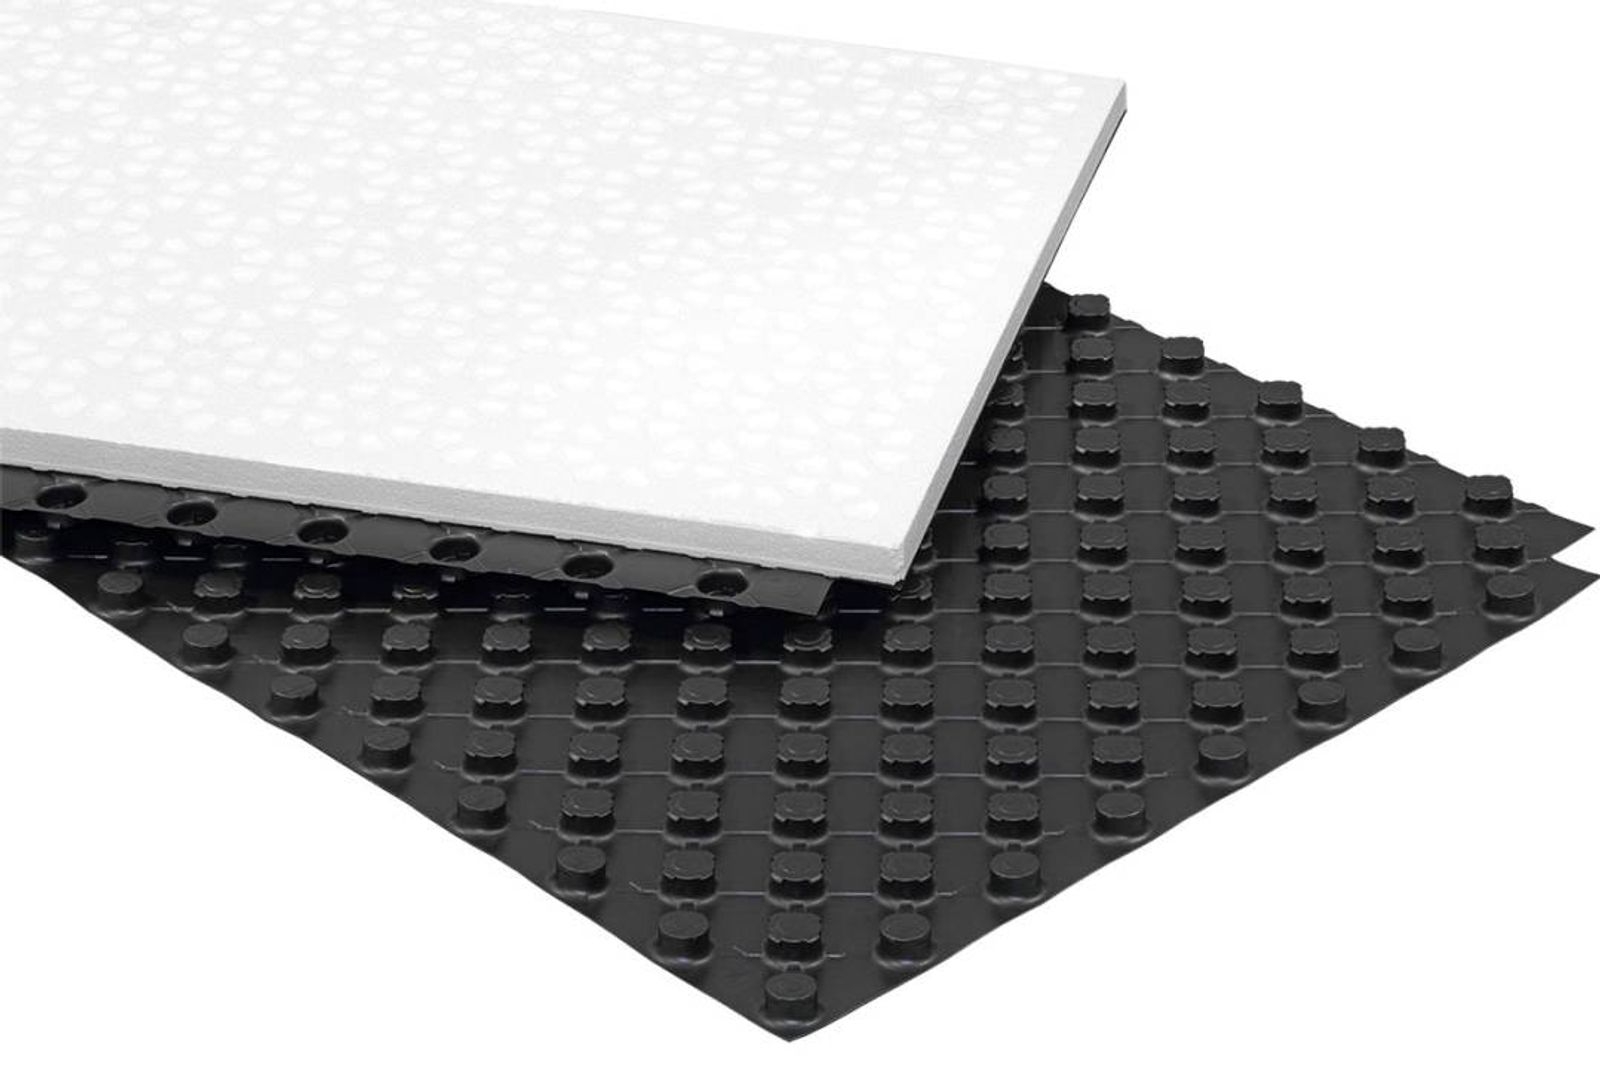 Fußbodenheizung 30-2 mm Noppensystem Standard für 14-17 mm Rohr 11.2 m²